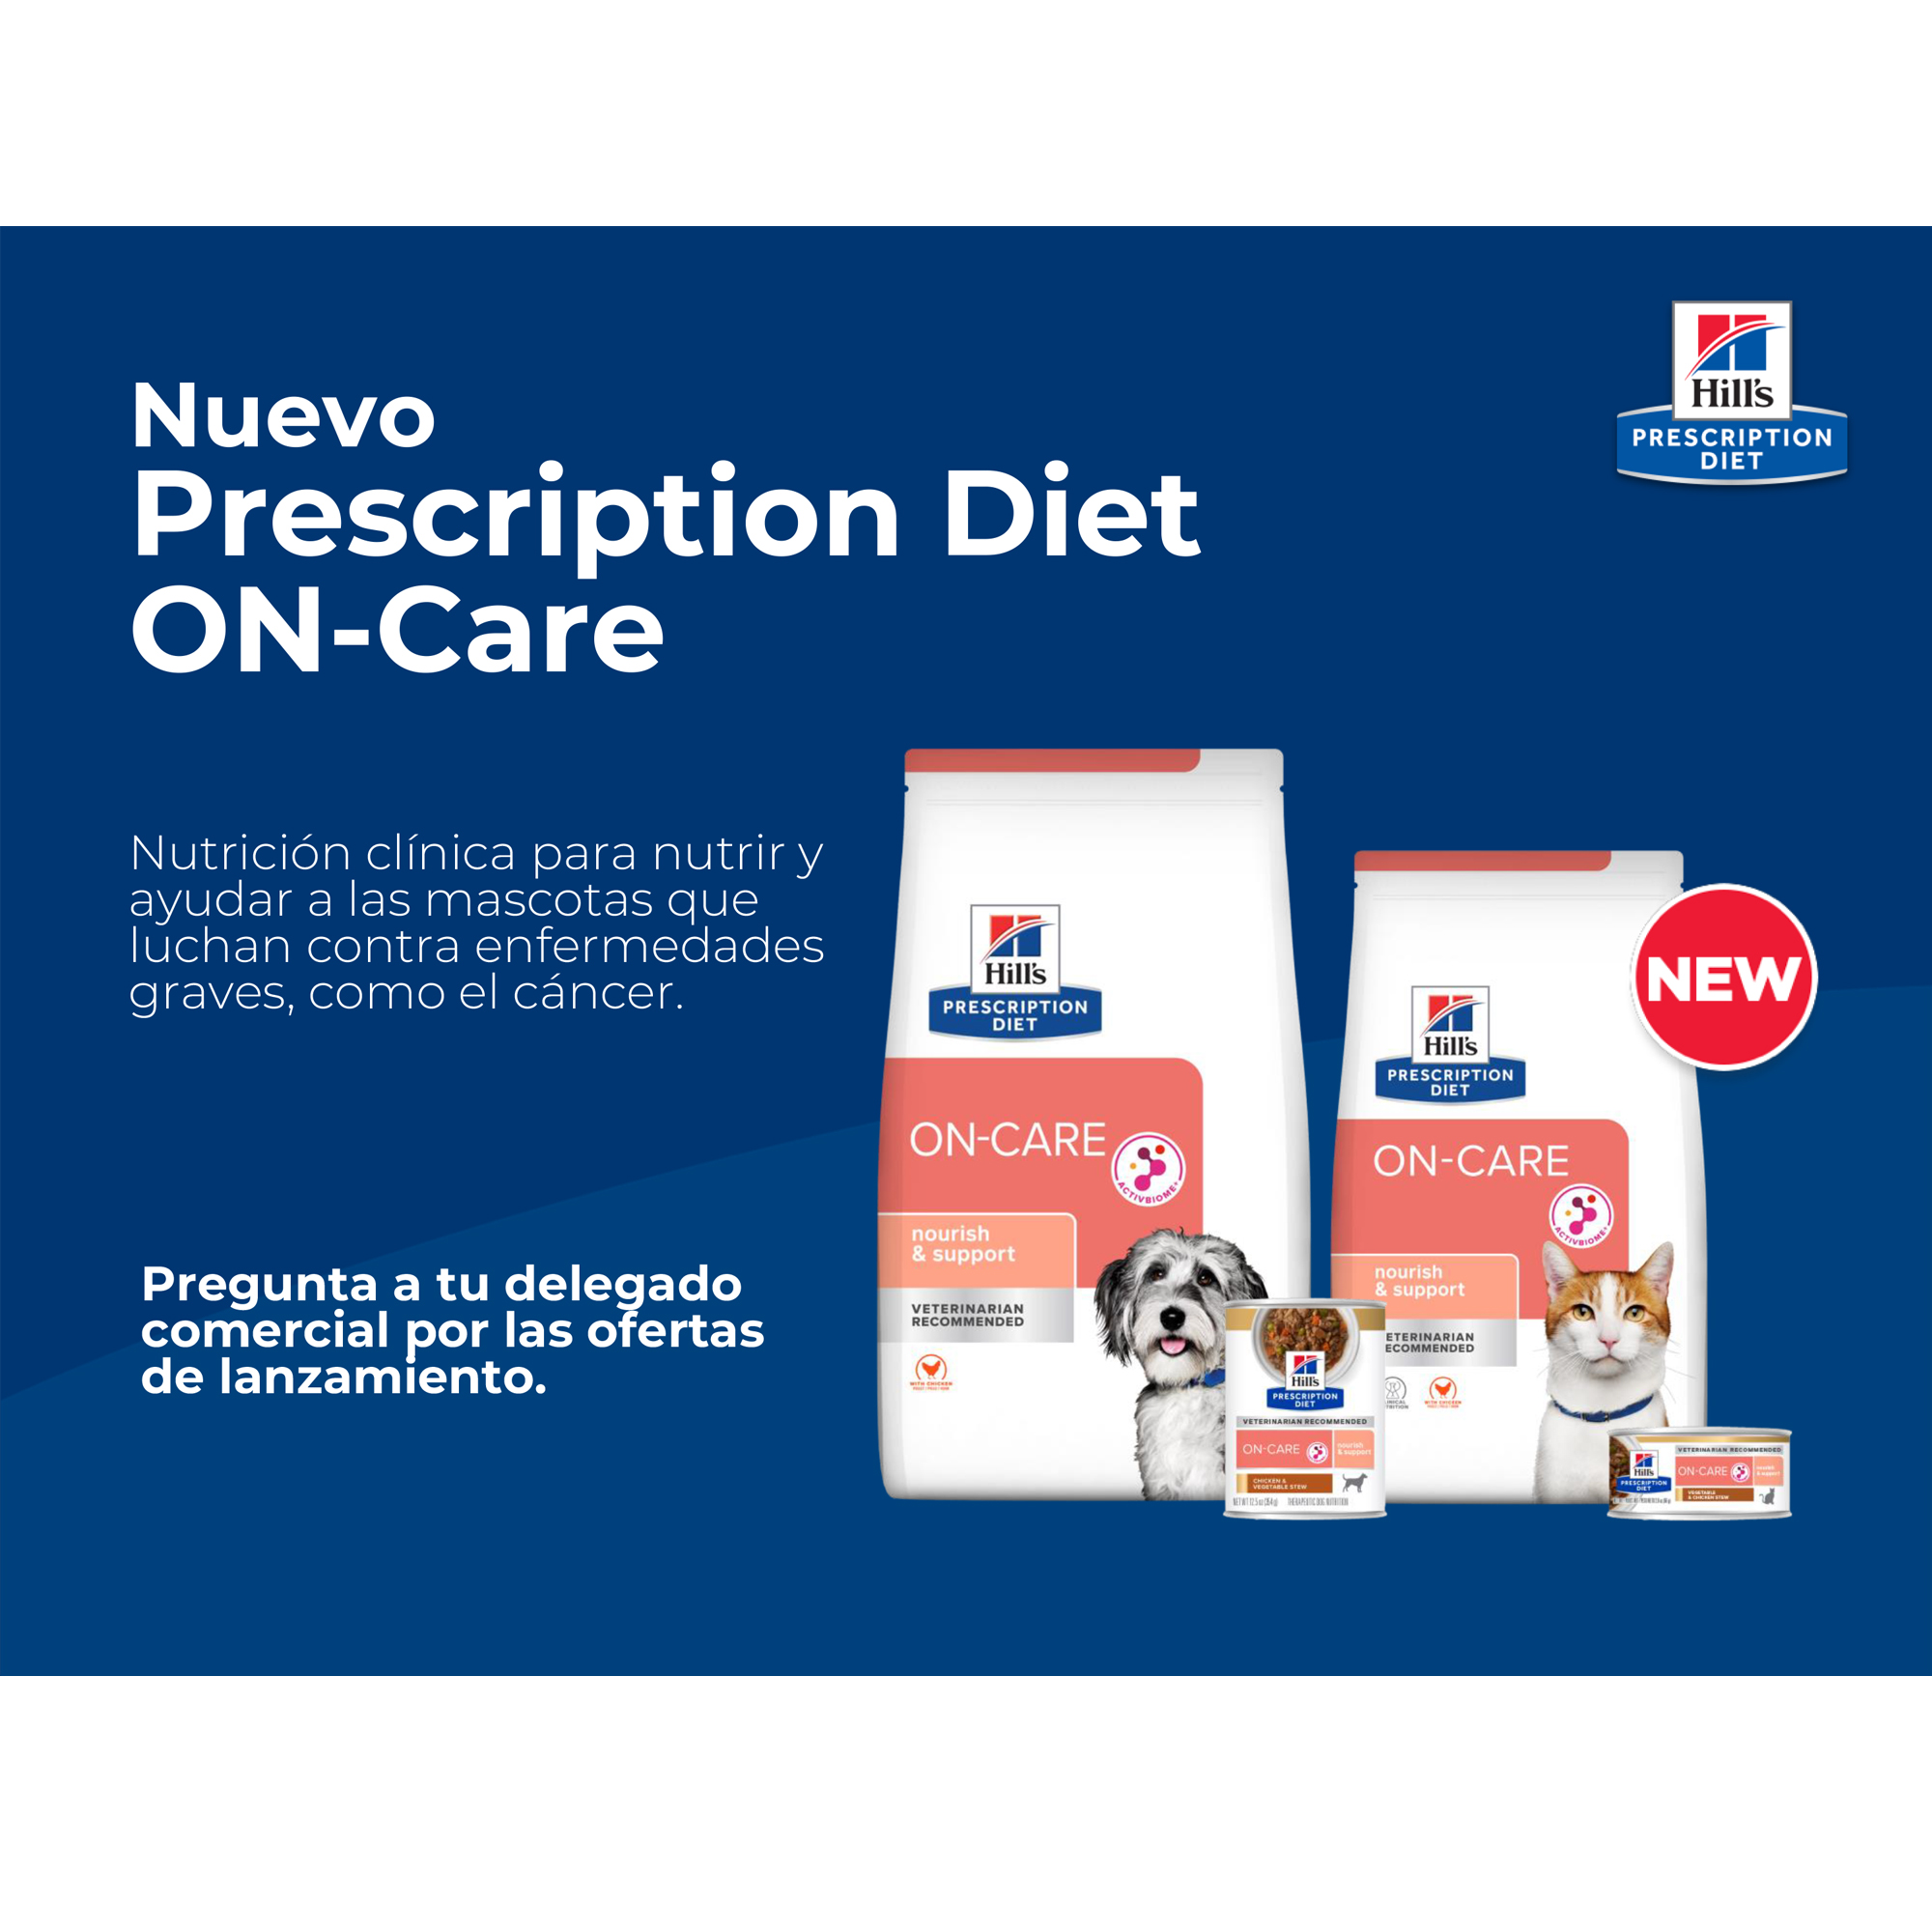 Nuevo Prescription Diet ON-Care